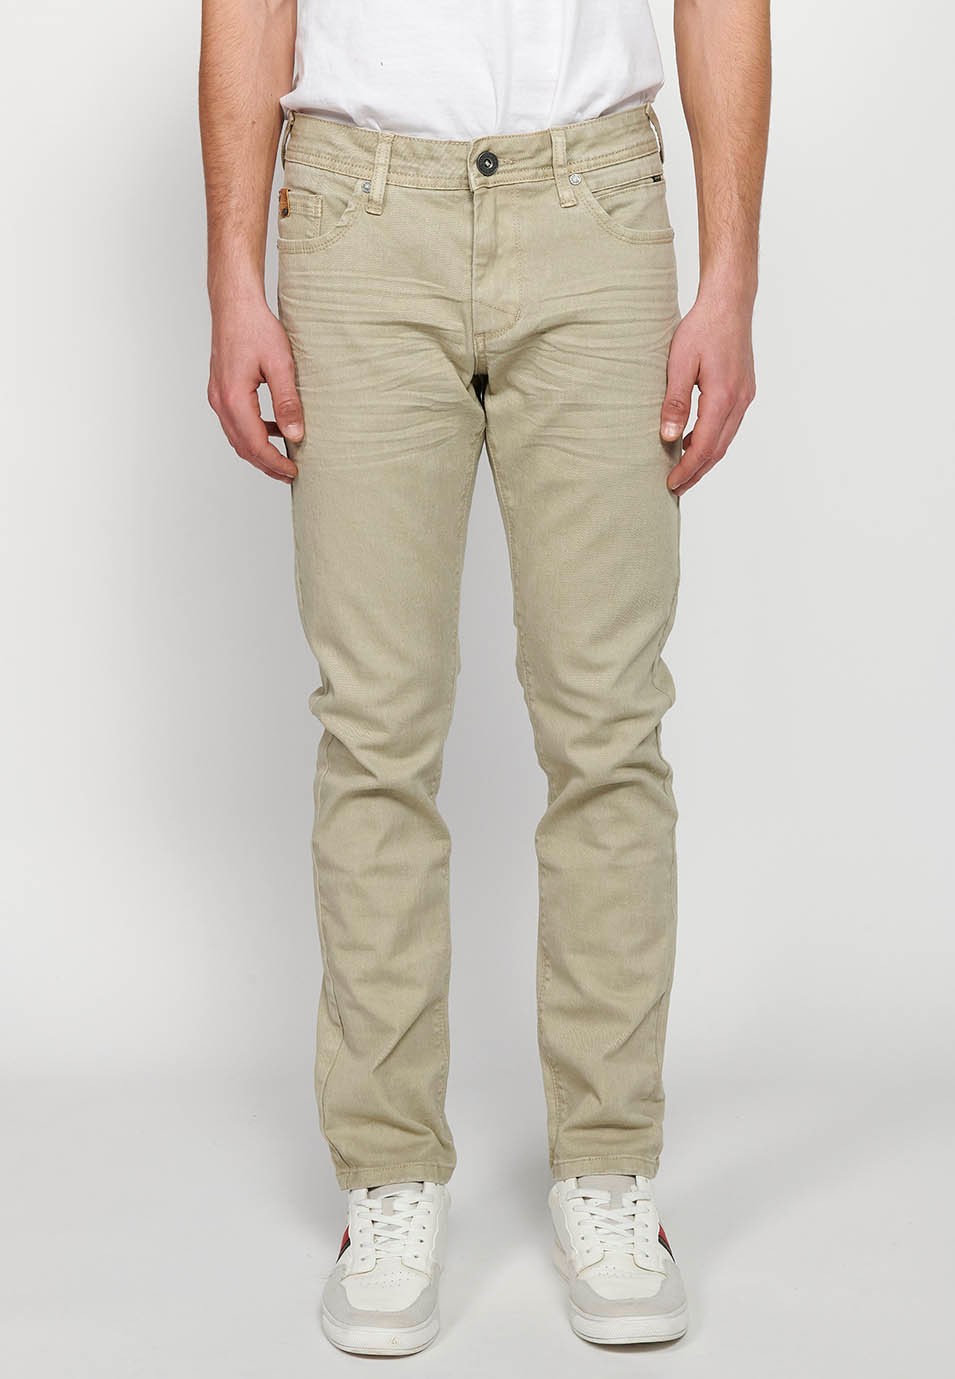 Pantalons llargs straigth regular fit amb Tancament davanter amb cremallera i botó amb Cinc butxaques, un cerillero de Color Pedra per a Home